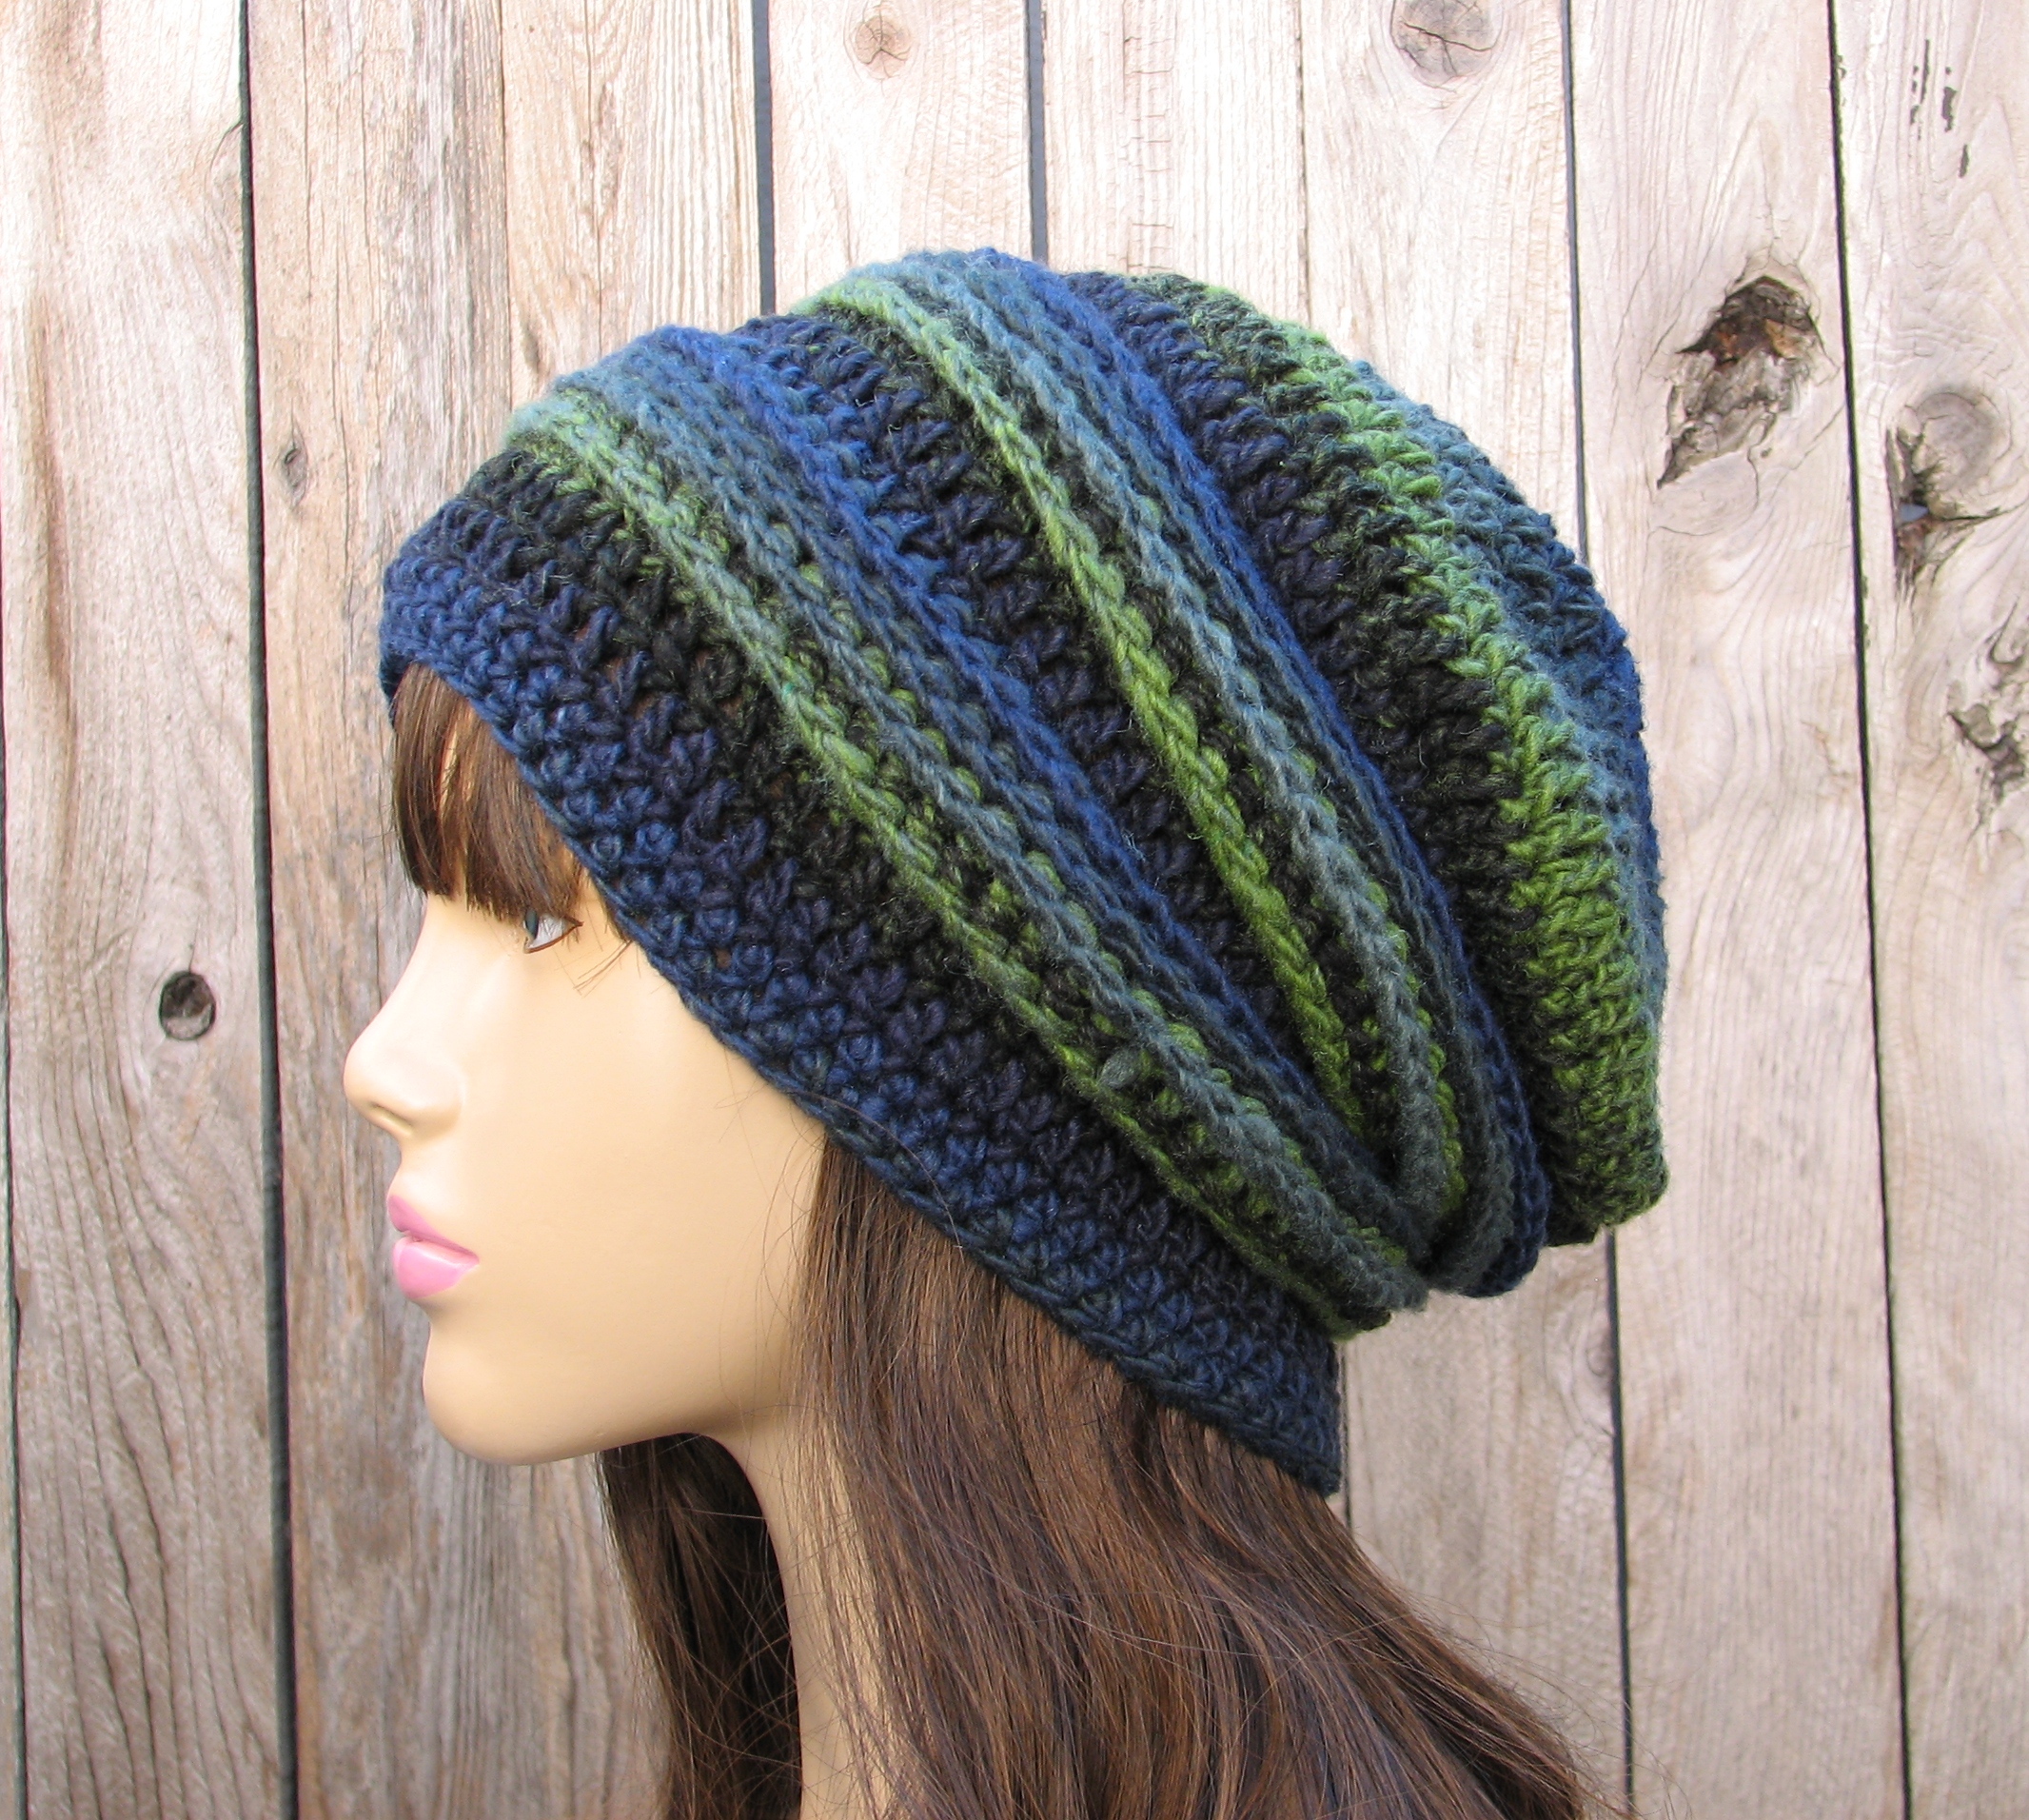 CROCHET PATTERN!!! Crochet Hat - Slouchy Hat, Crochet Pattern PDF,Easy